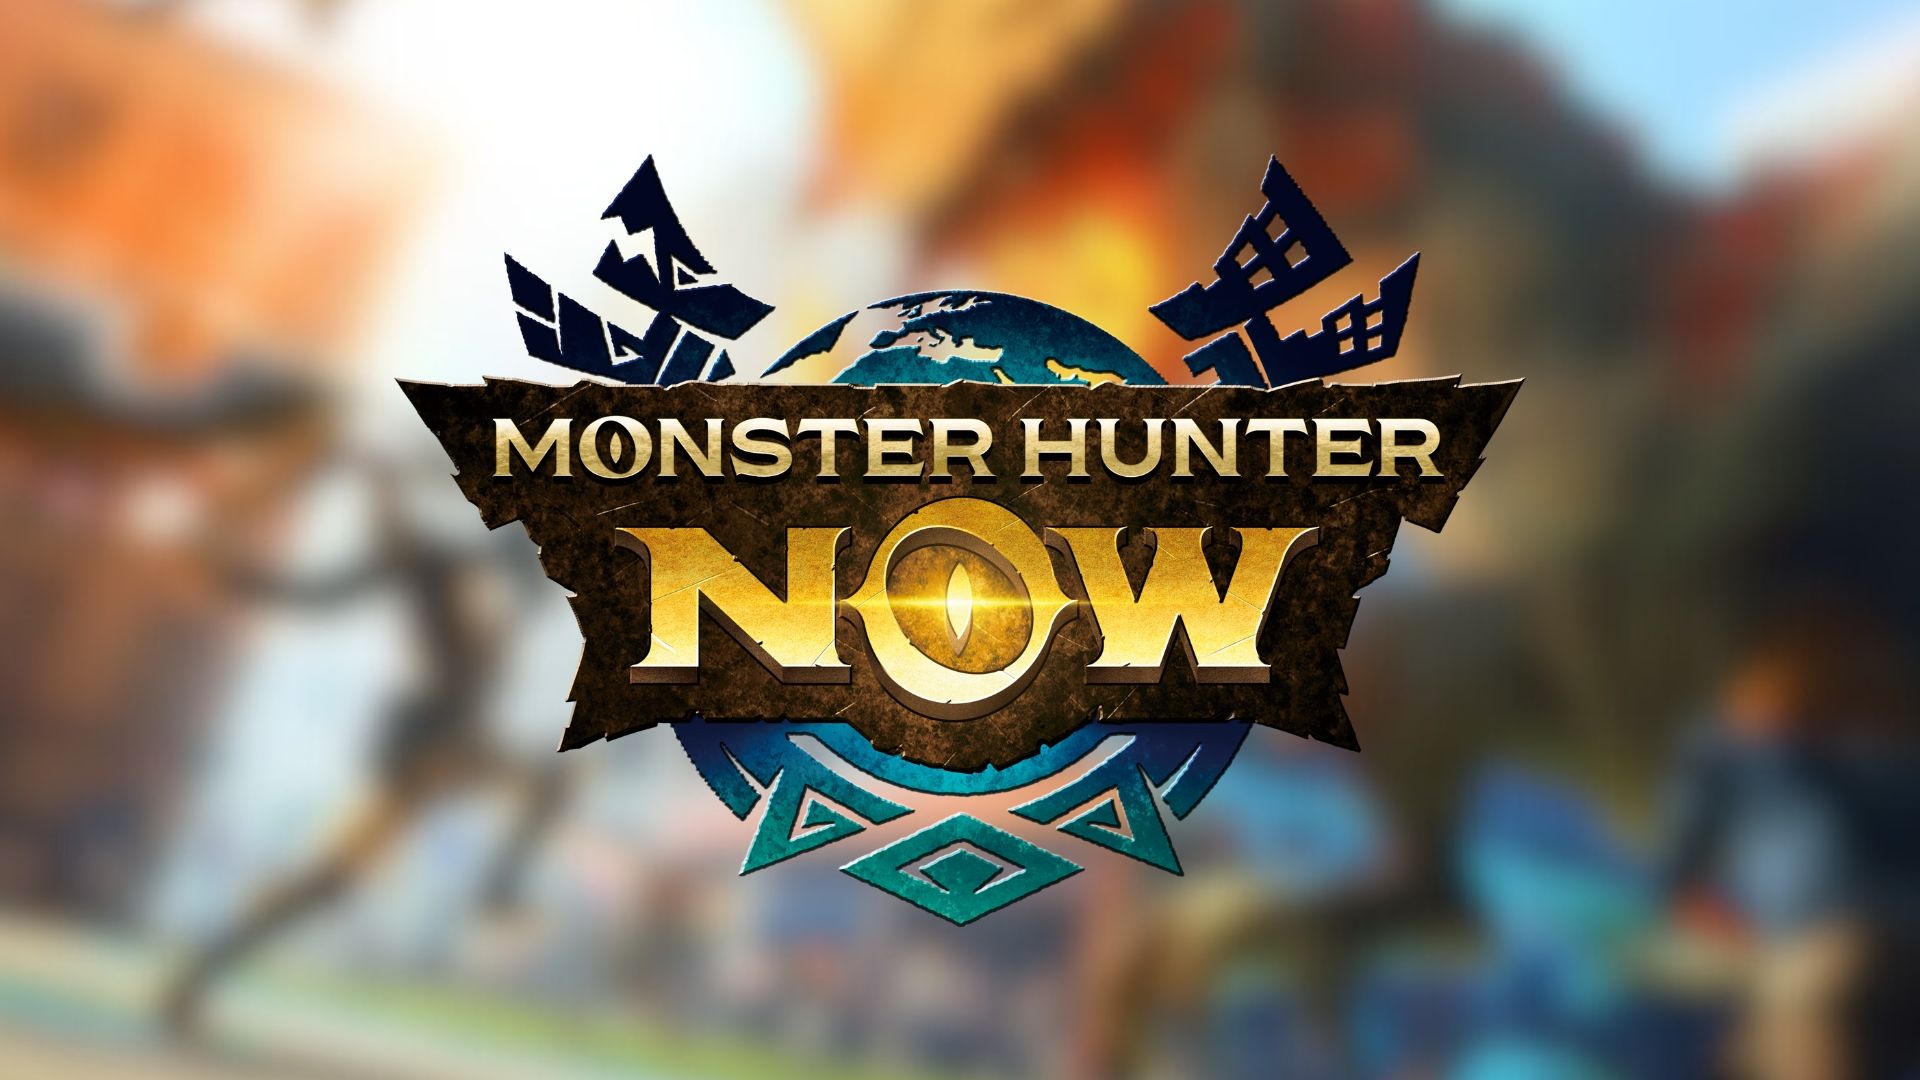 "Una introducción simplista al mundo de Monster Hunter" - Revisión de Monster Hunter Now